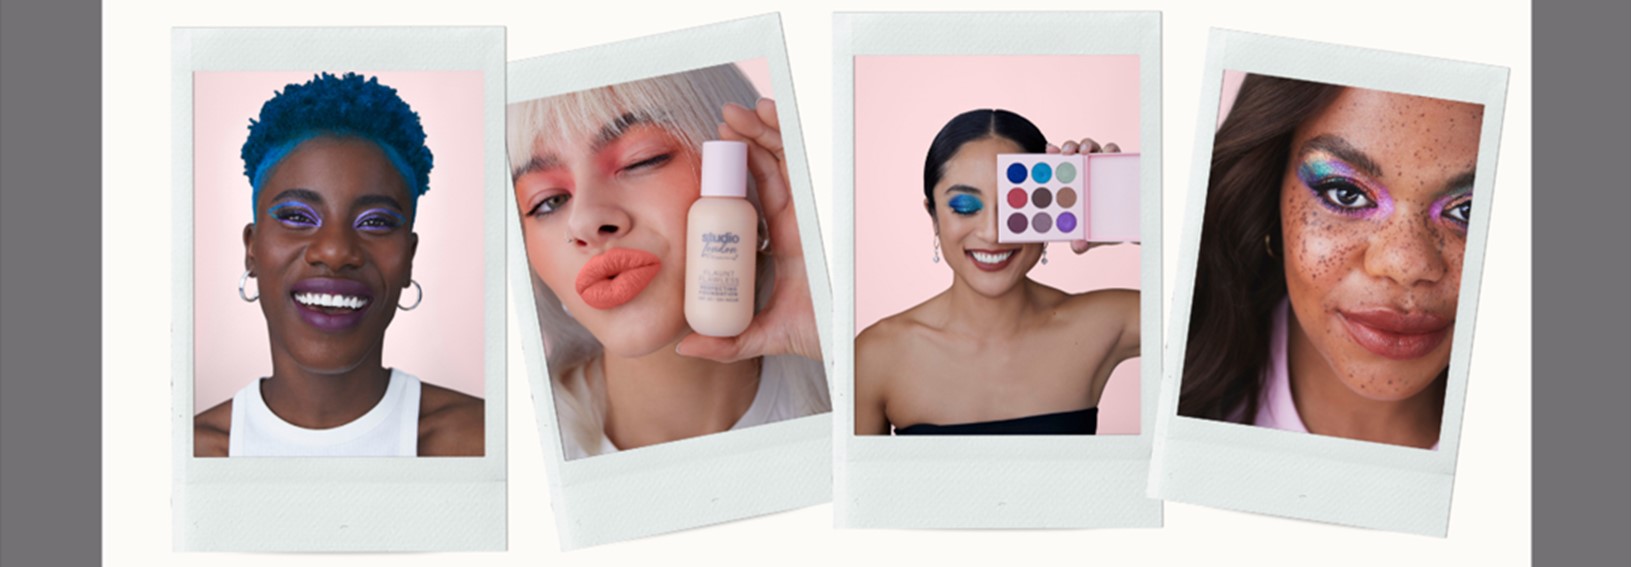 Superdrug's budget own-brand makeup range Studio London is designed for diversity [Image: Superdrug]